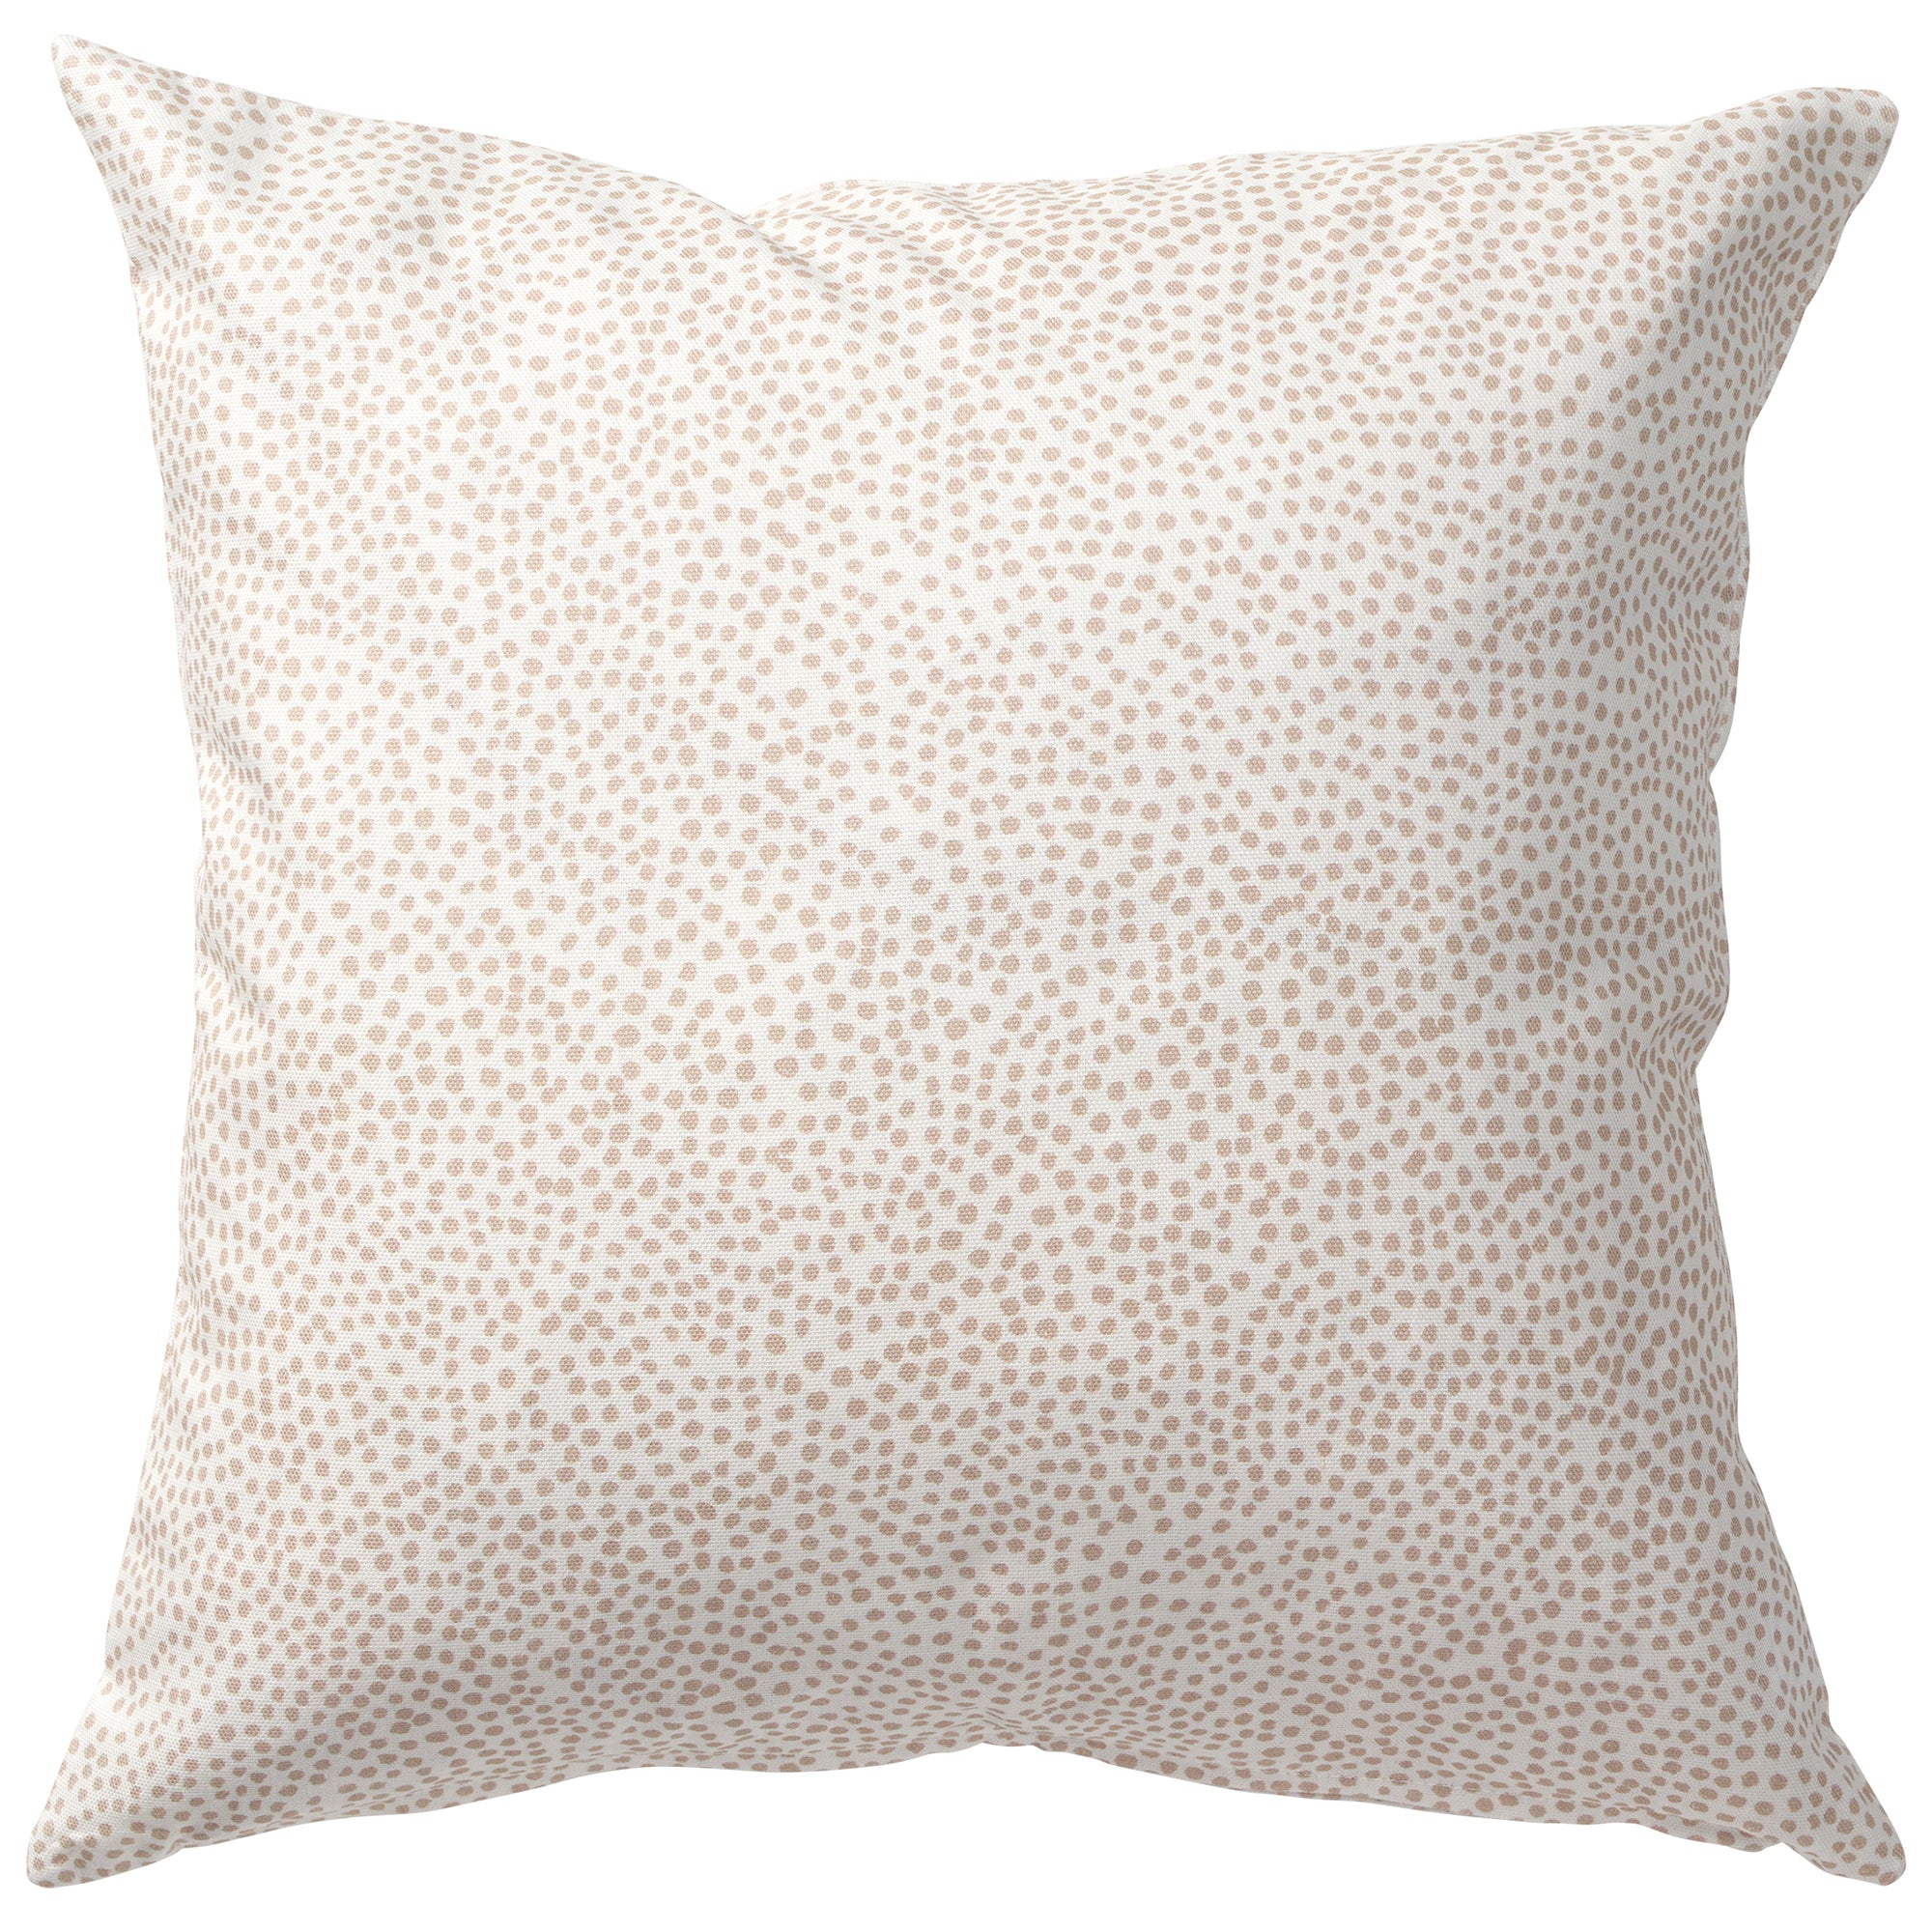 Dots Beige 45x45cm Cotton Cushion Cover